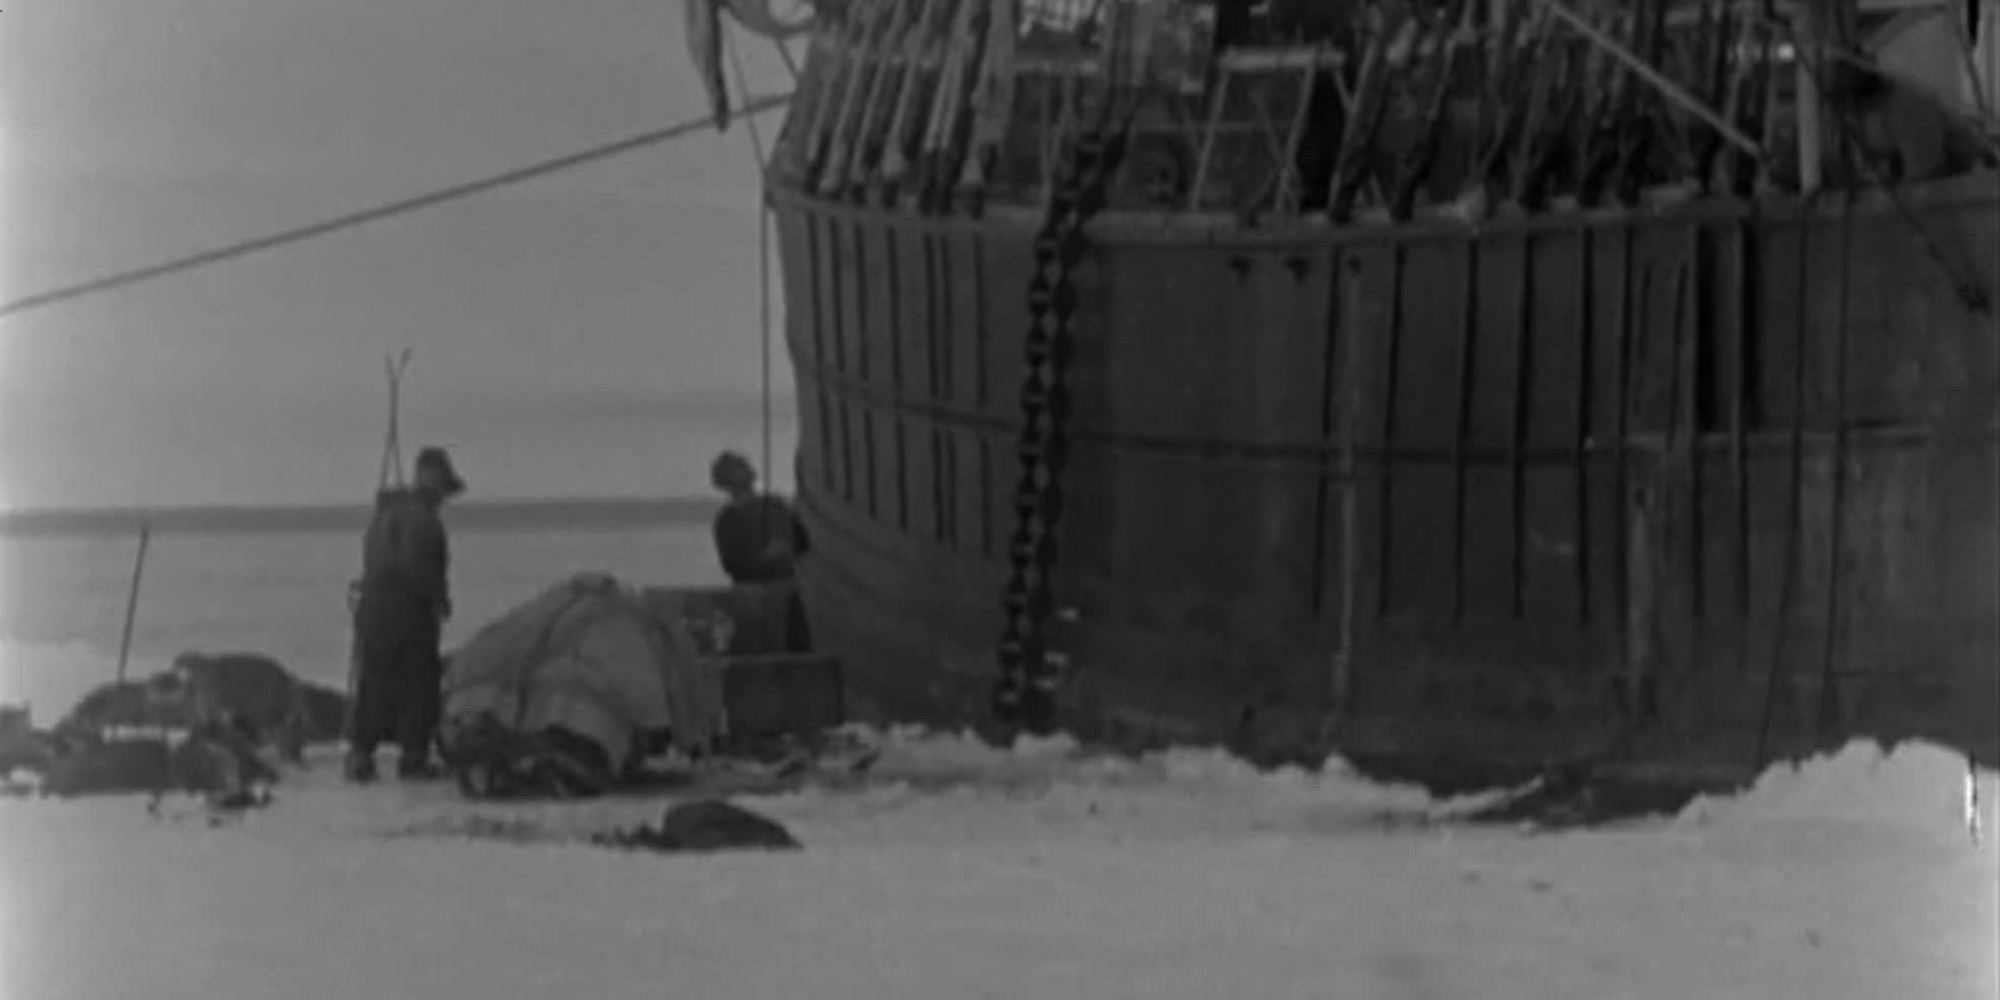 Utsnitt fra filmen Roald Amundsens sydpolsferd 1910 - 1912.